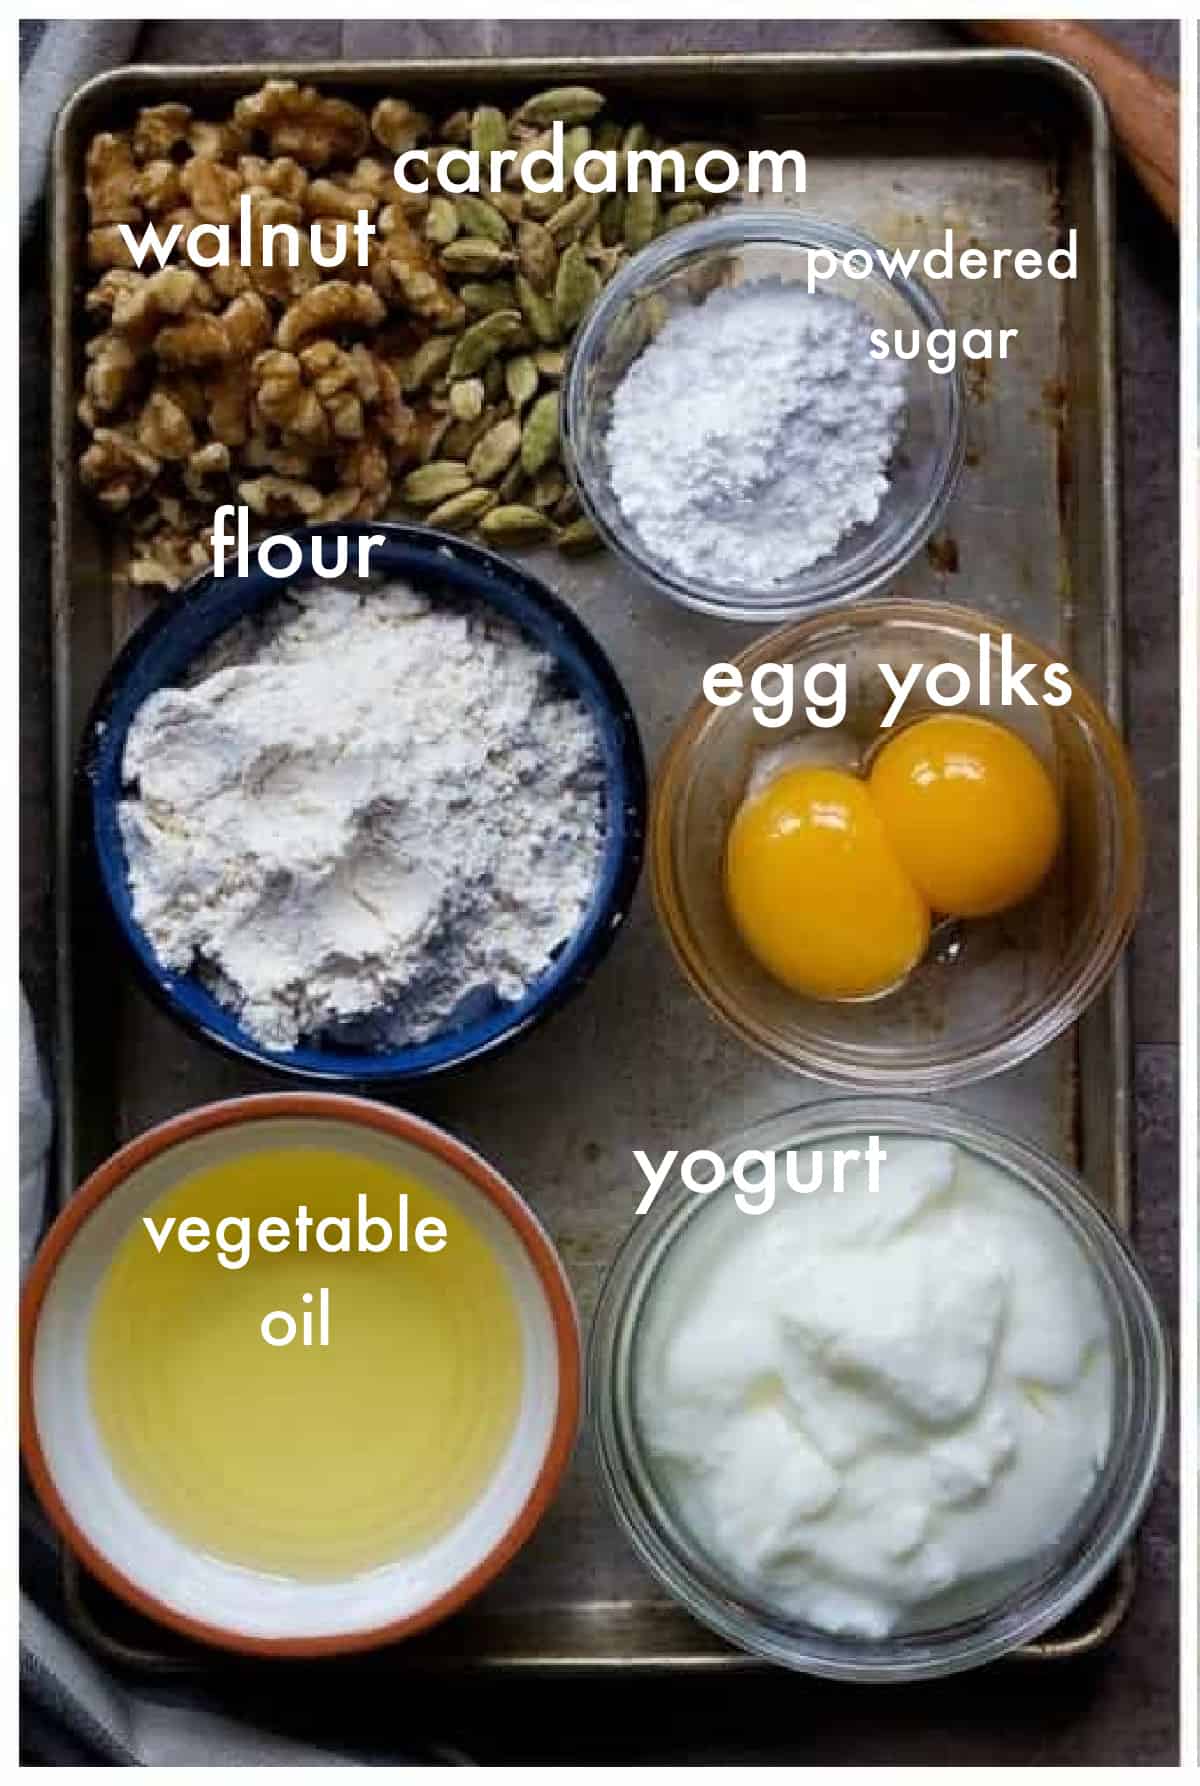 To ake qottab you need flour, egg yolks, powdered sugar, walnuts and yogurt. 